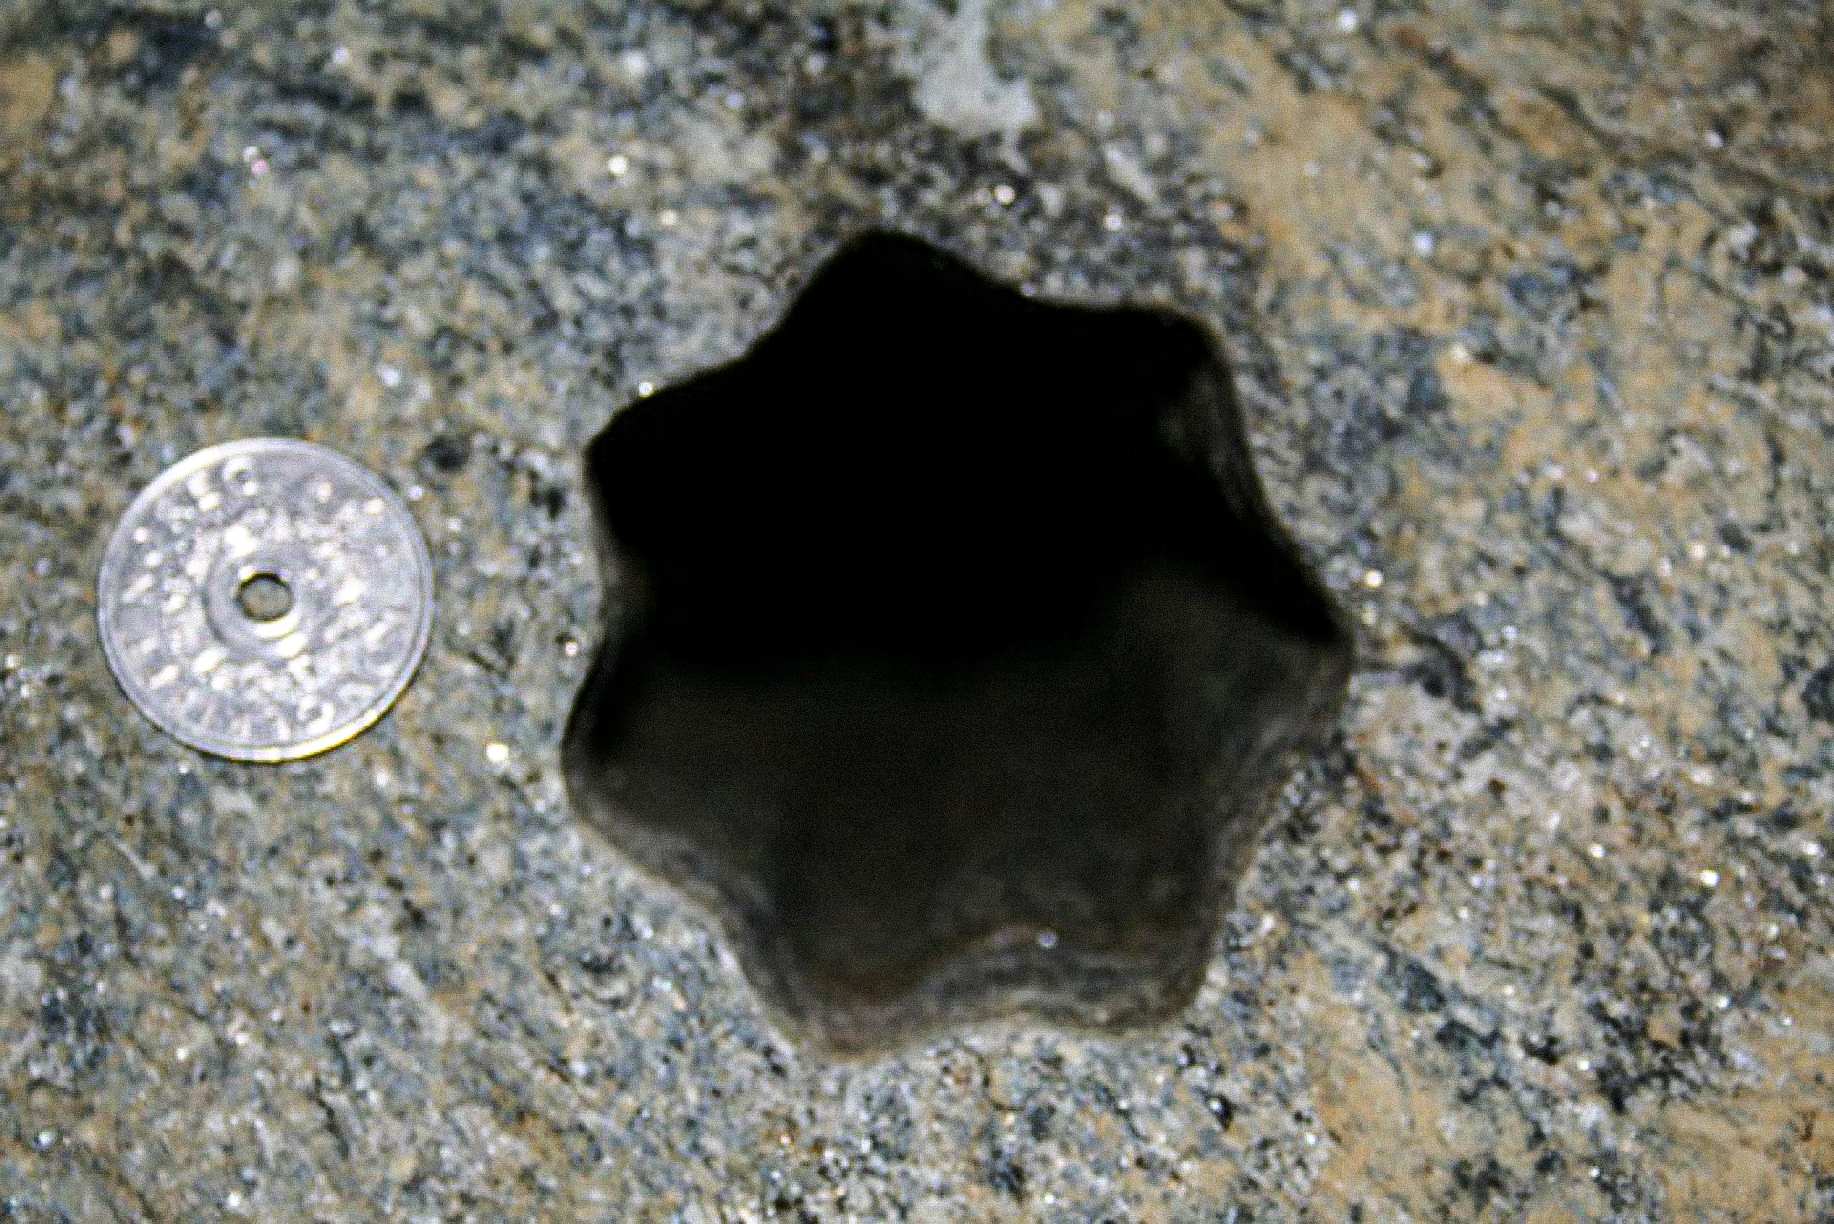 Lubang berbentuk bintang (dengan tujuh sisi) ini ditemukan oleh kontraktor pada hari Jumat 30 November 2007 di Volda, Norwegia. Koin 5 kroner Norwegia berdiameter 25 mm. Diameter lubang sekitar 65 - 70 mm.